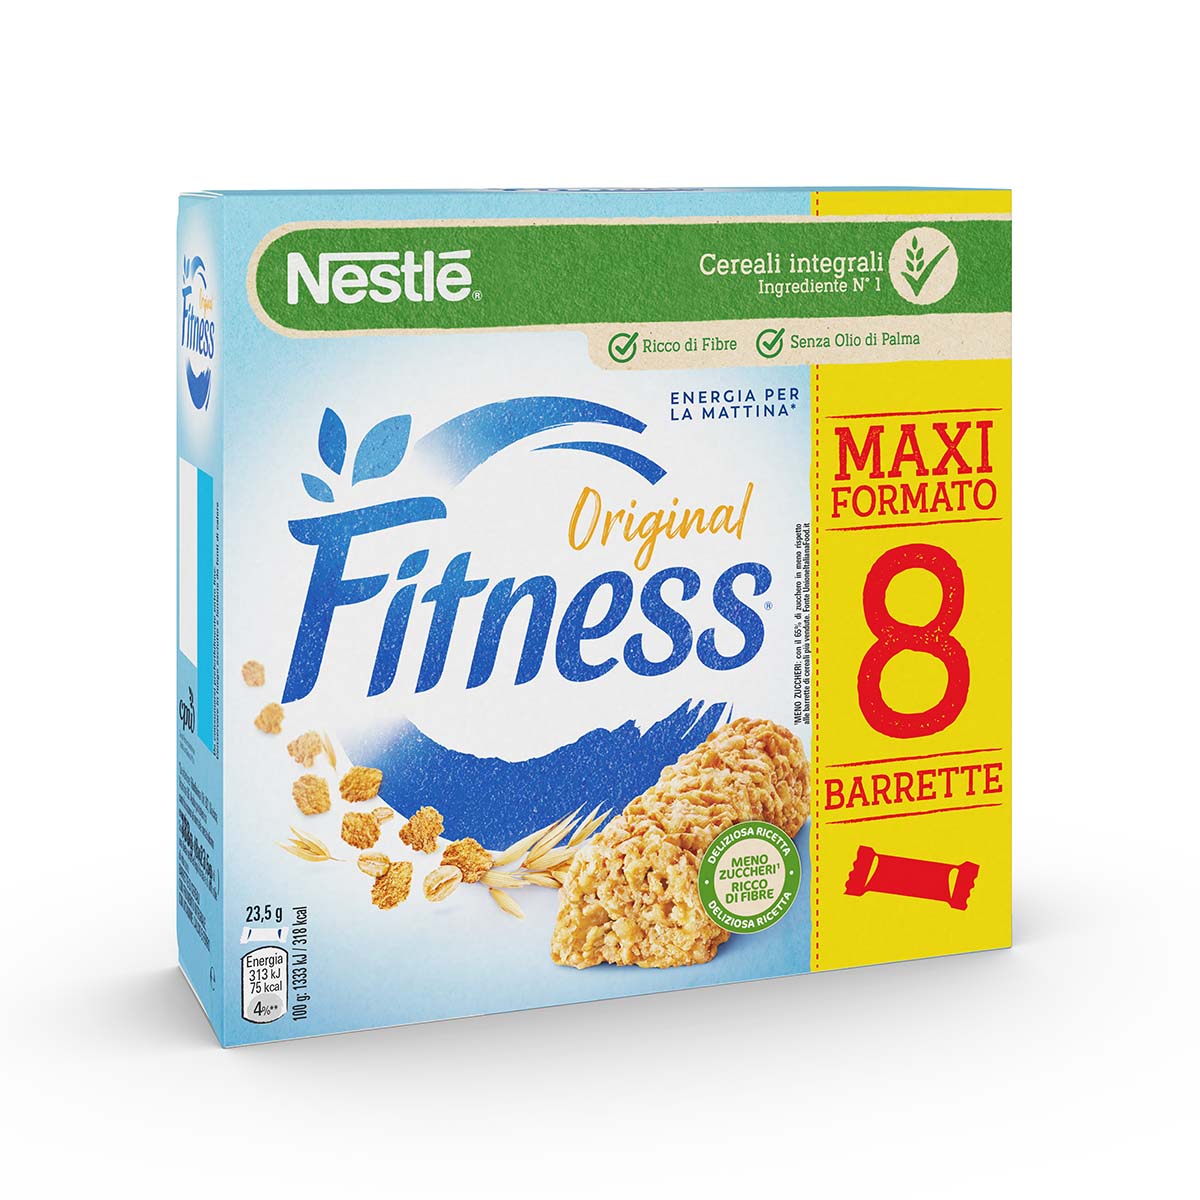 Fitness® ORIGINAL Barrette di cereali con frumento integrale, con vitamine, calcio e ferro x8